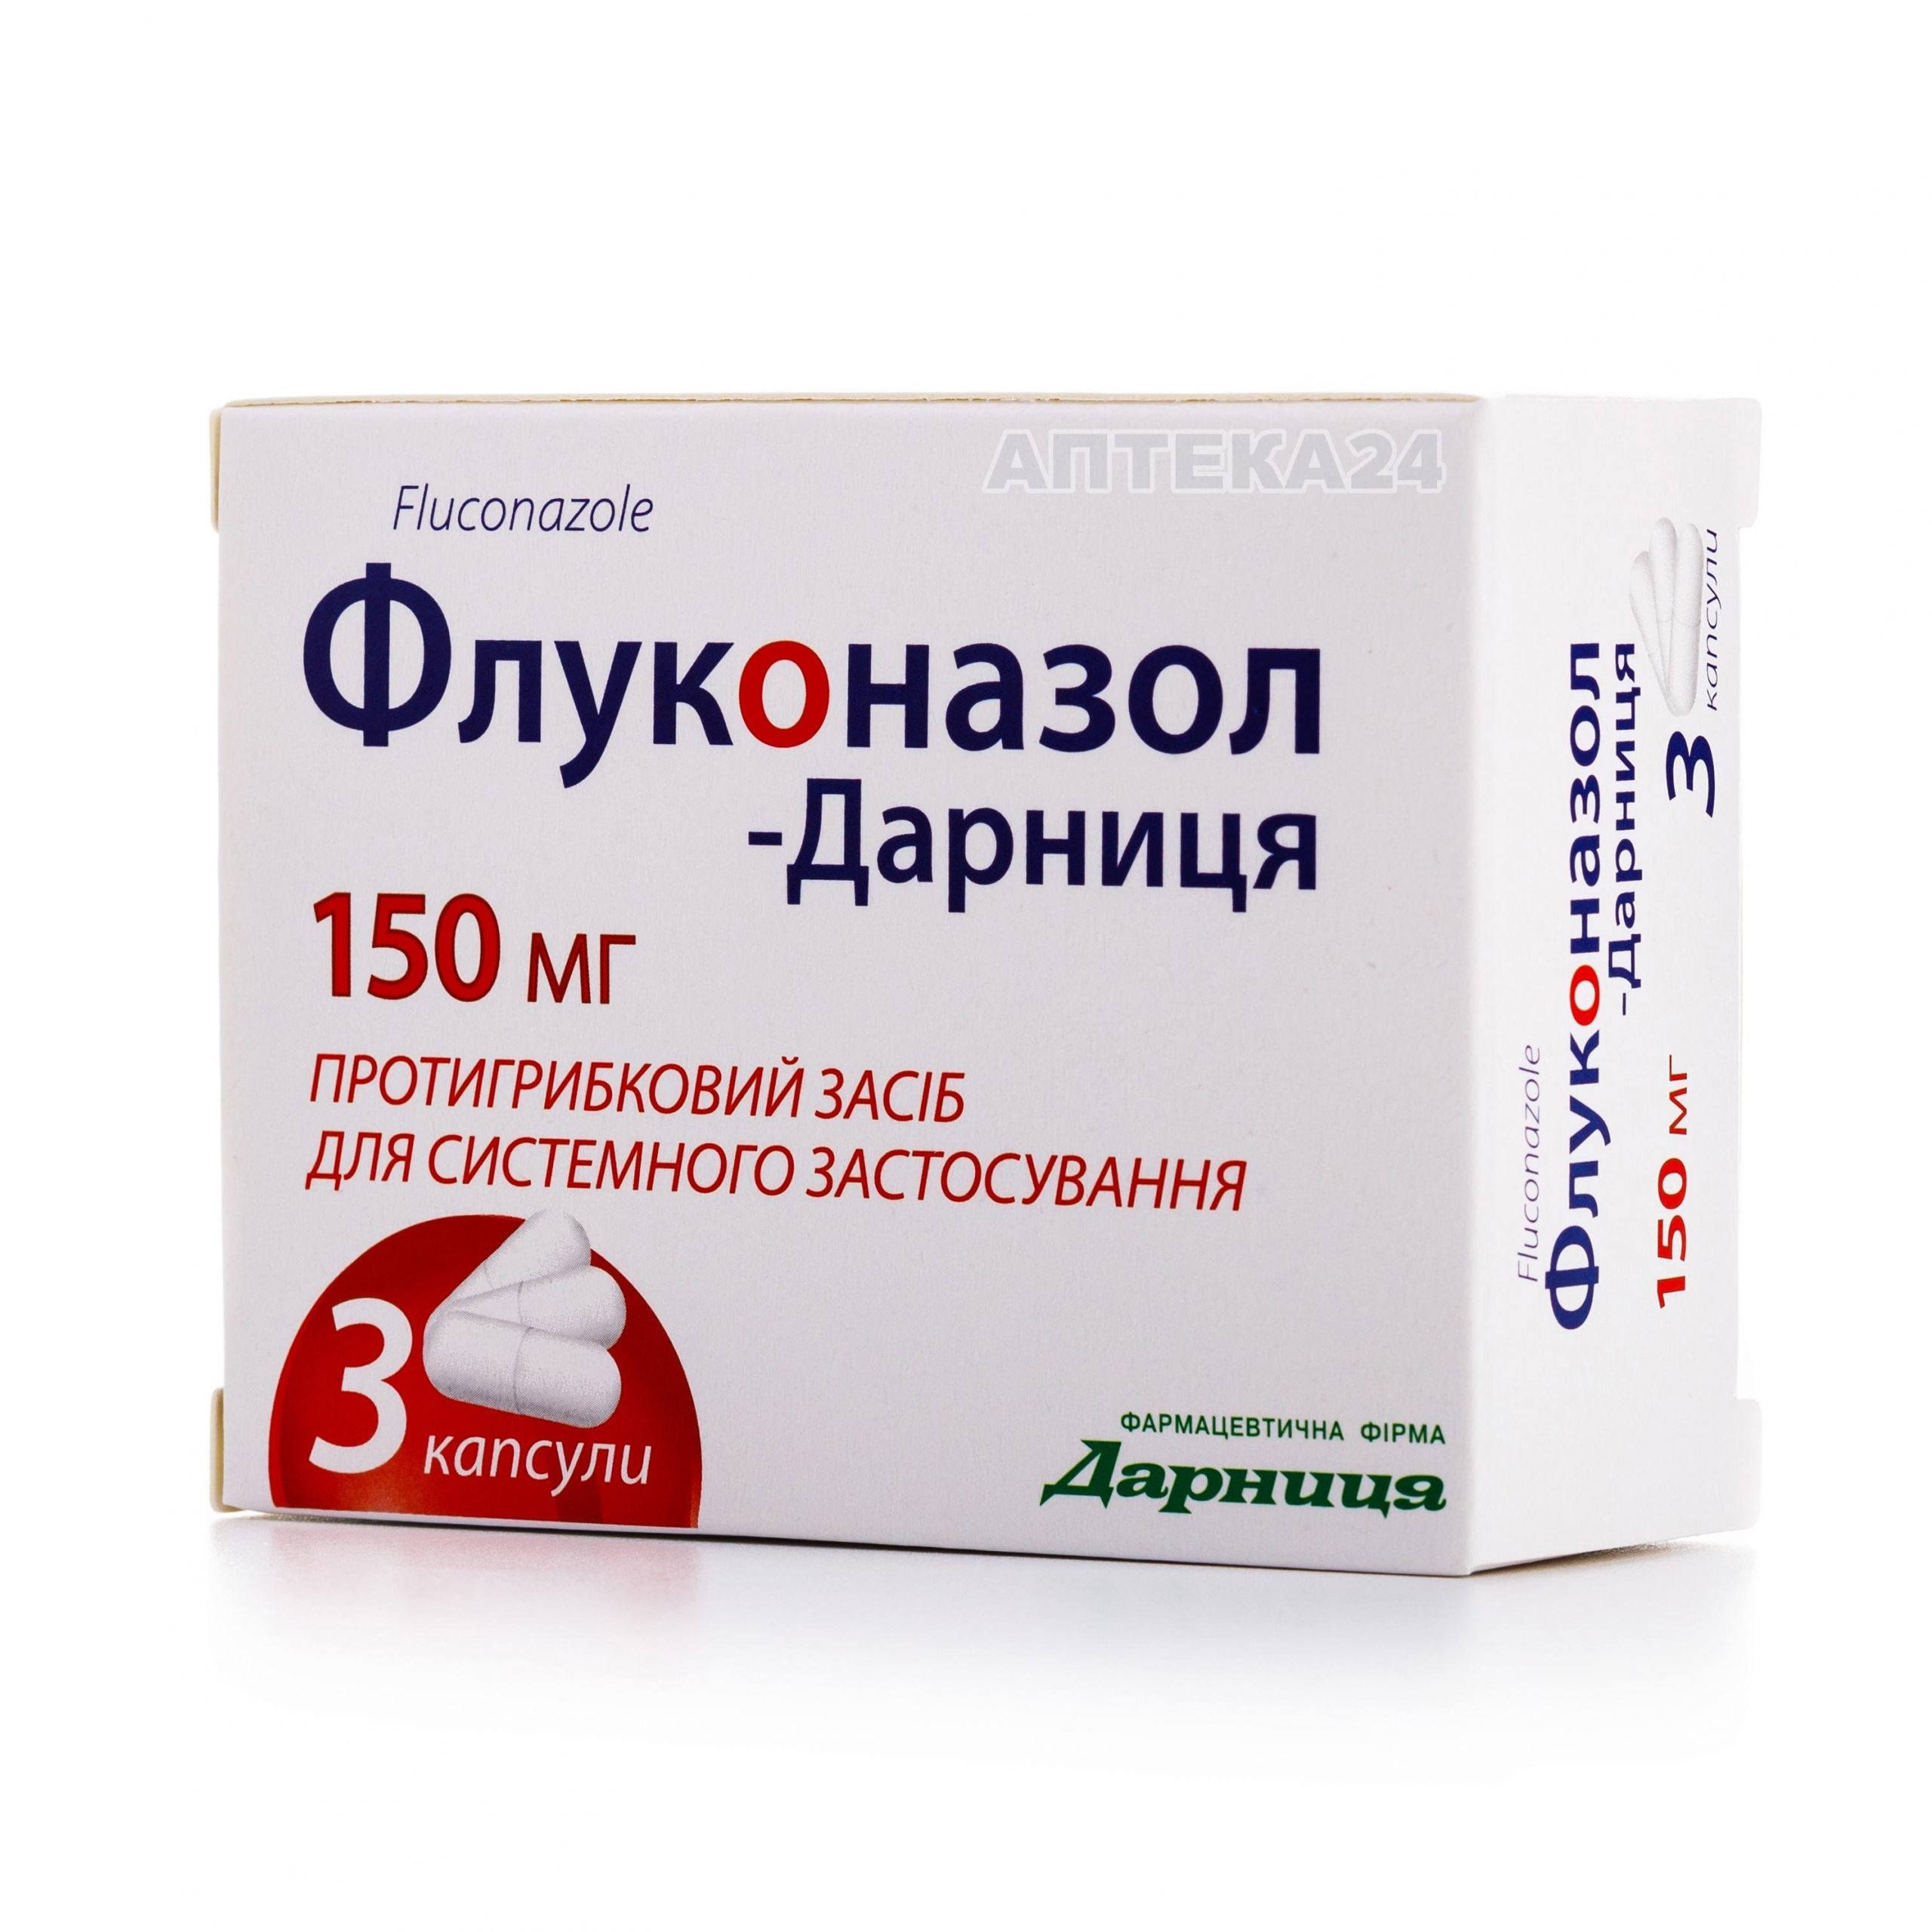 Флуконазол-Дарница капсулы 150 мг №3_60041b843f097.jpeg